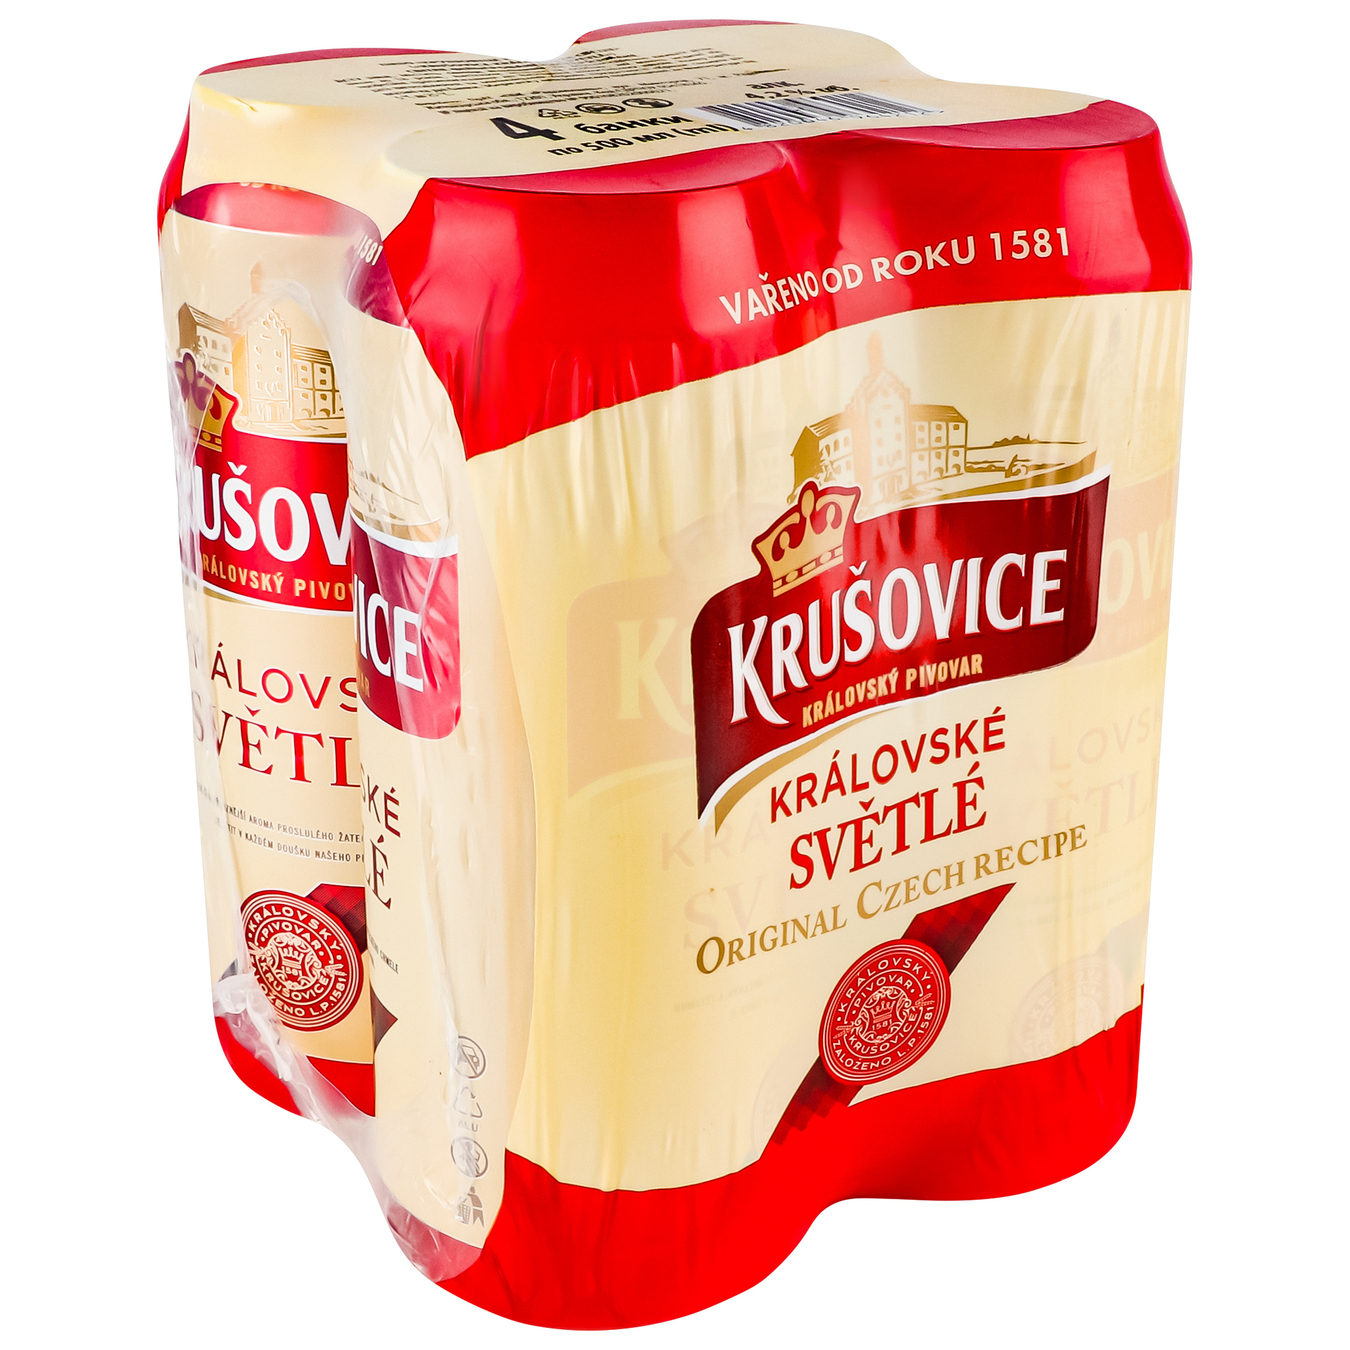 Light beer Krusovice Kralovske 4.2% 4*0.5 l 2